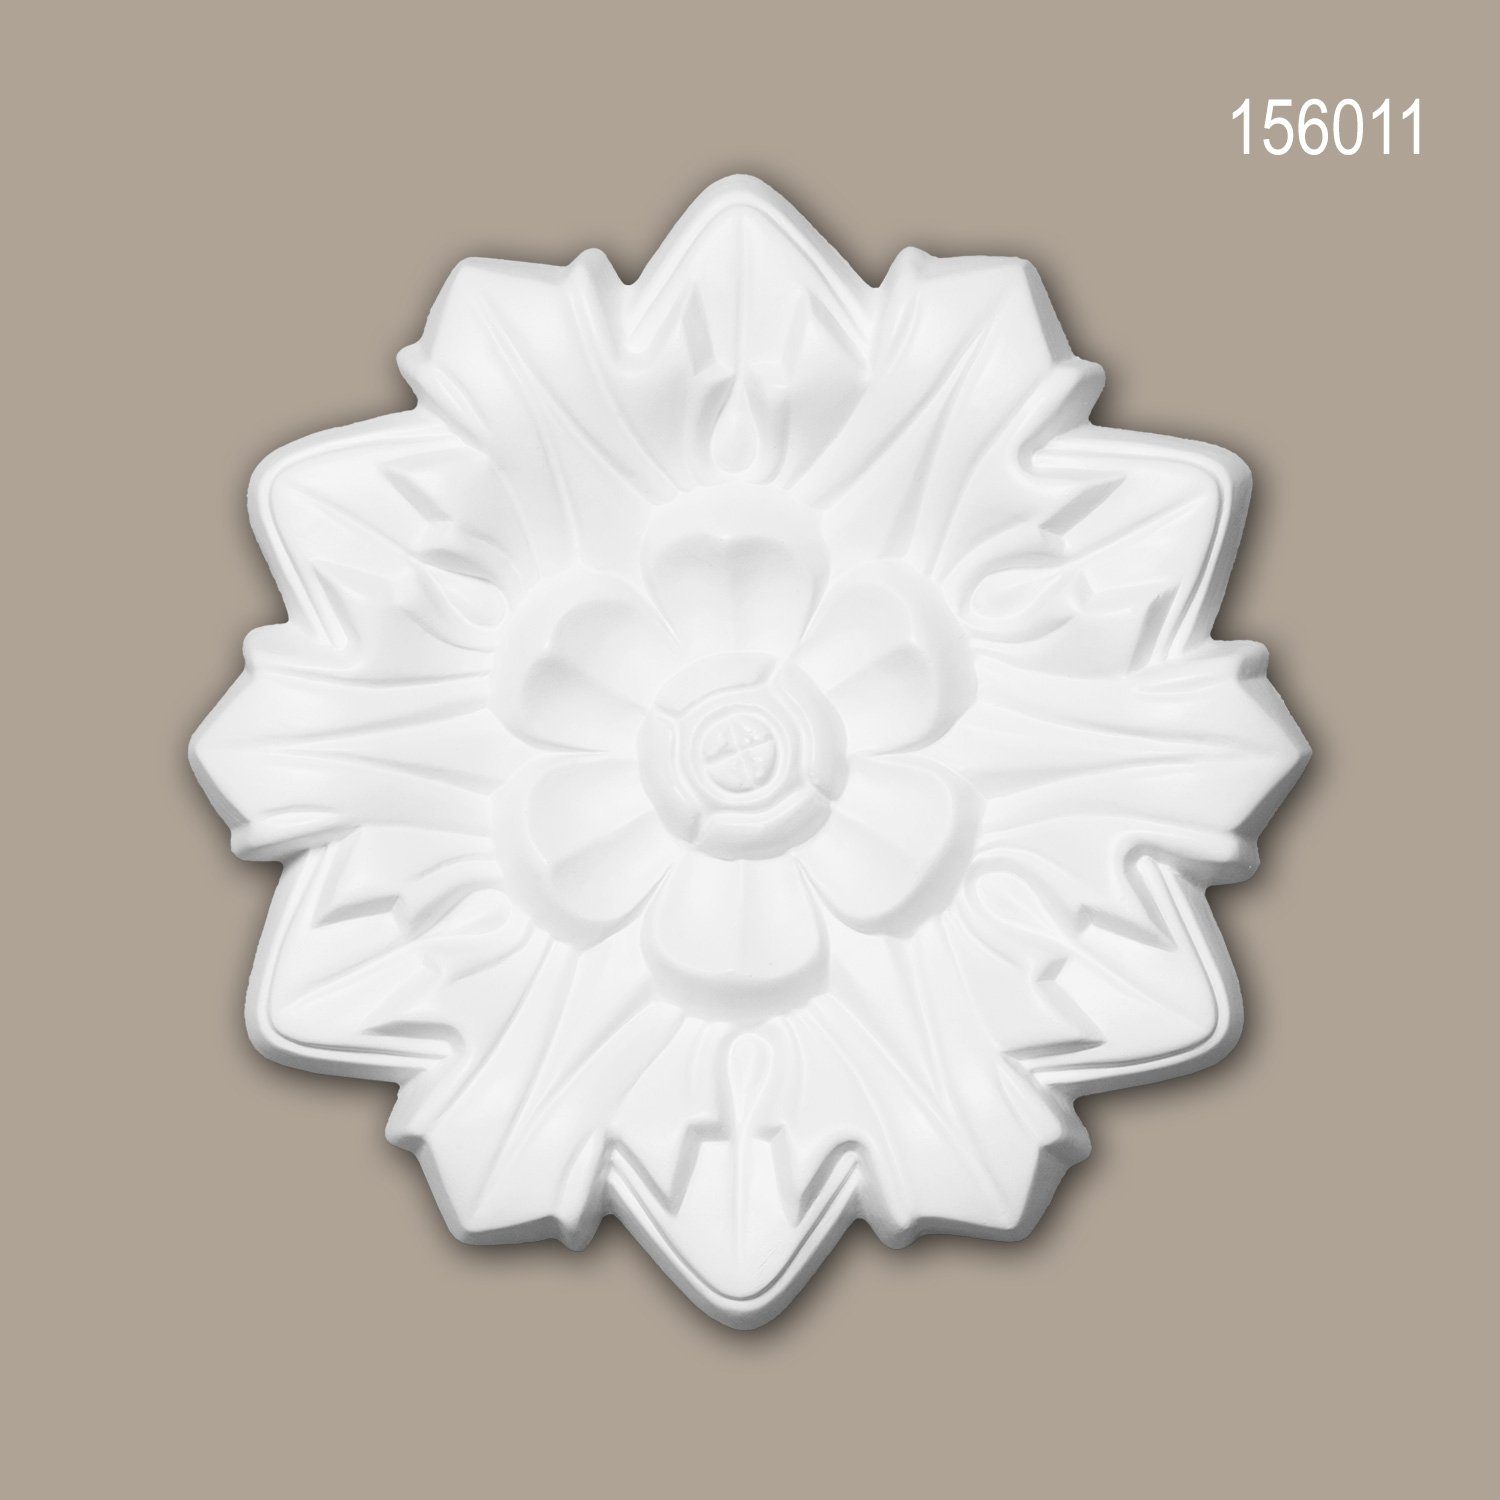 156011 Durchmesser Profhome Stuckrosette, weiß, cm), vorgrundiert, Neo-Renaissance 19,8 1 Decken-Rosette Deckenelement, Medallion, St., Deckenrosette, Stil: Zierelement, (Rosette,